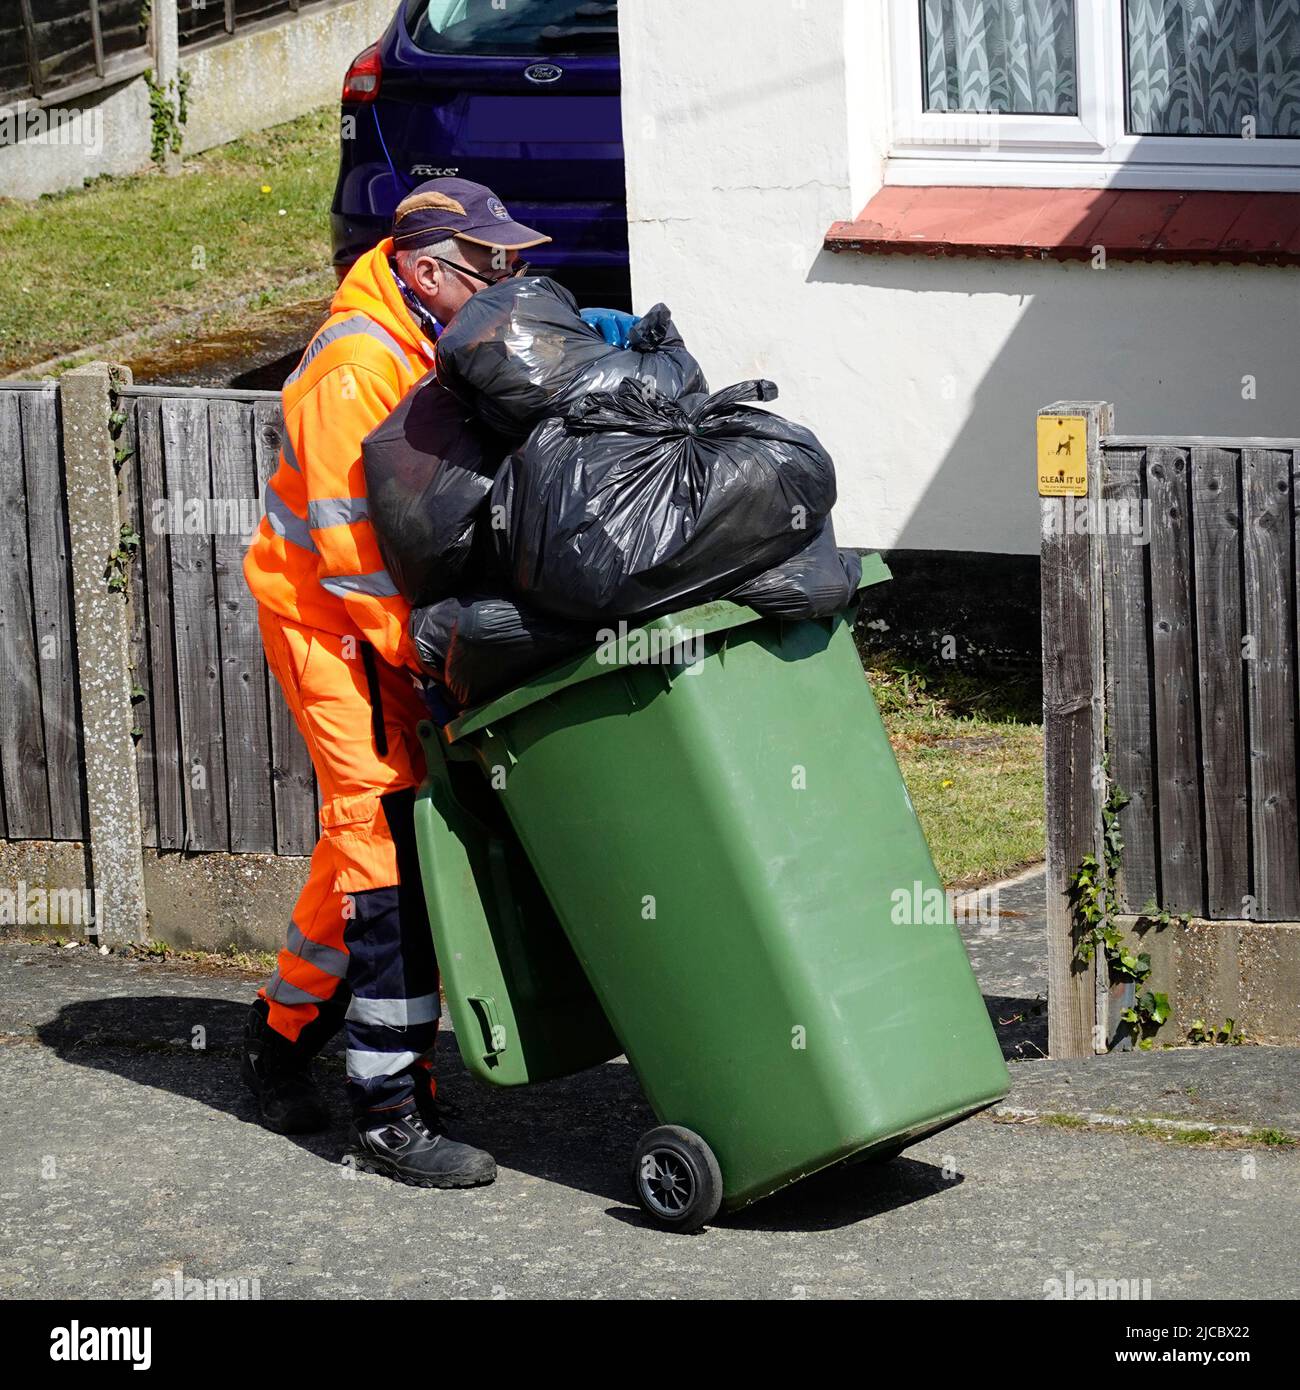 Gestion des déchets refuge collecteur poussière homme de travail haute visibilité vêtements poussant roue débordante poubelle pleine de sacs de déchets noirs Essex Angleterre Royaume-Uni Banque D'Images